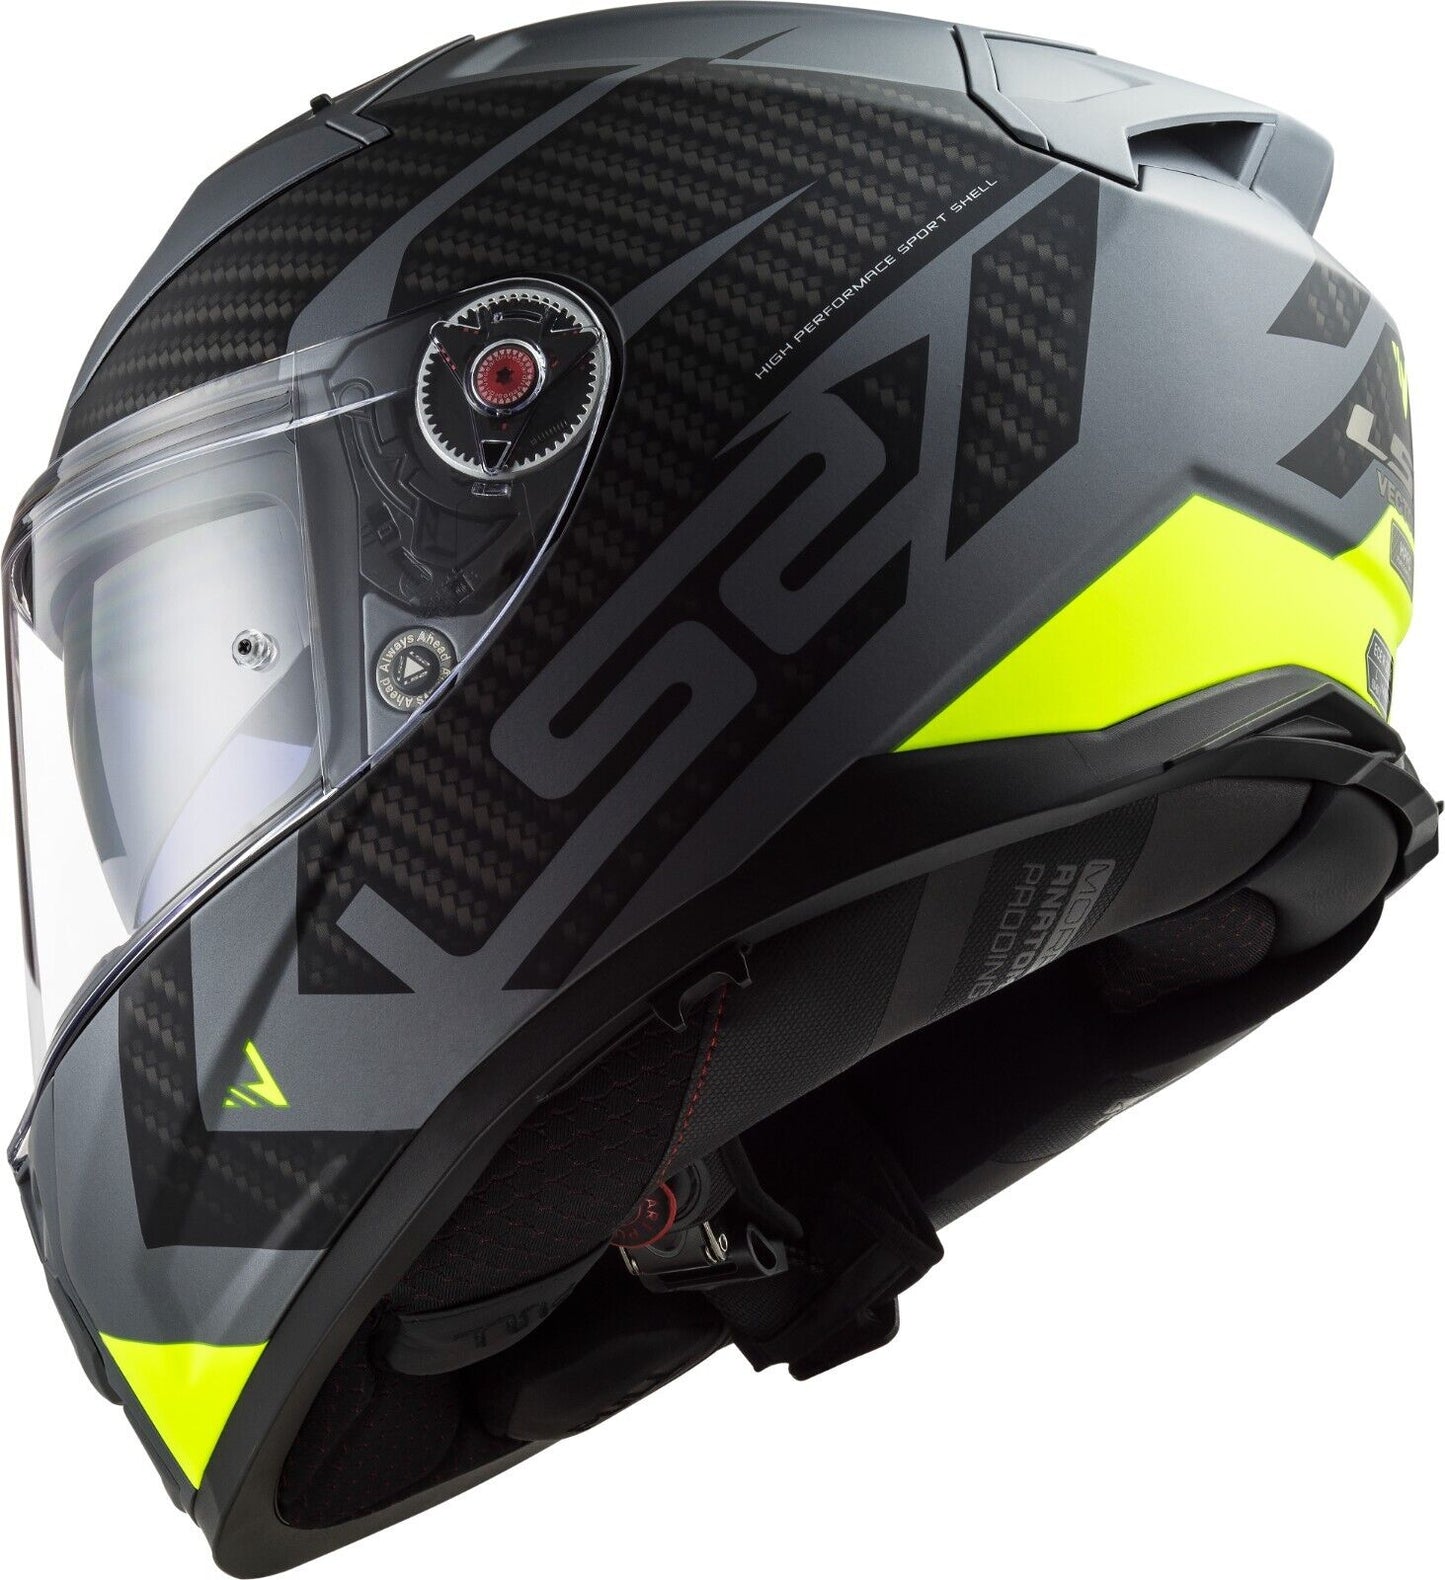 Riderwear | LS2 FF811 VECTOR-II Fibreglass Helmet - SPLITTER Yellow